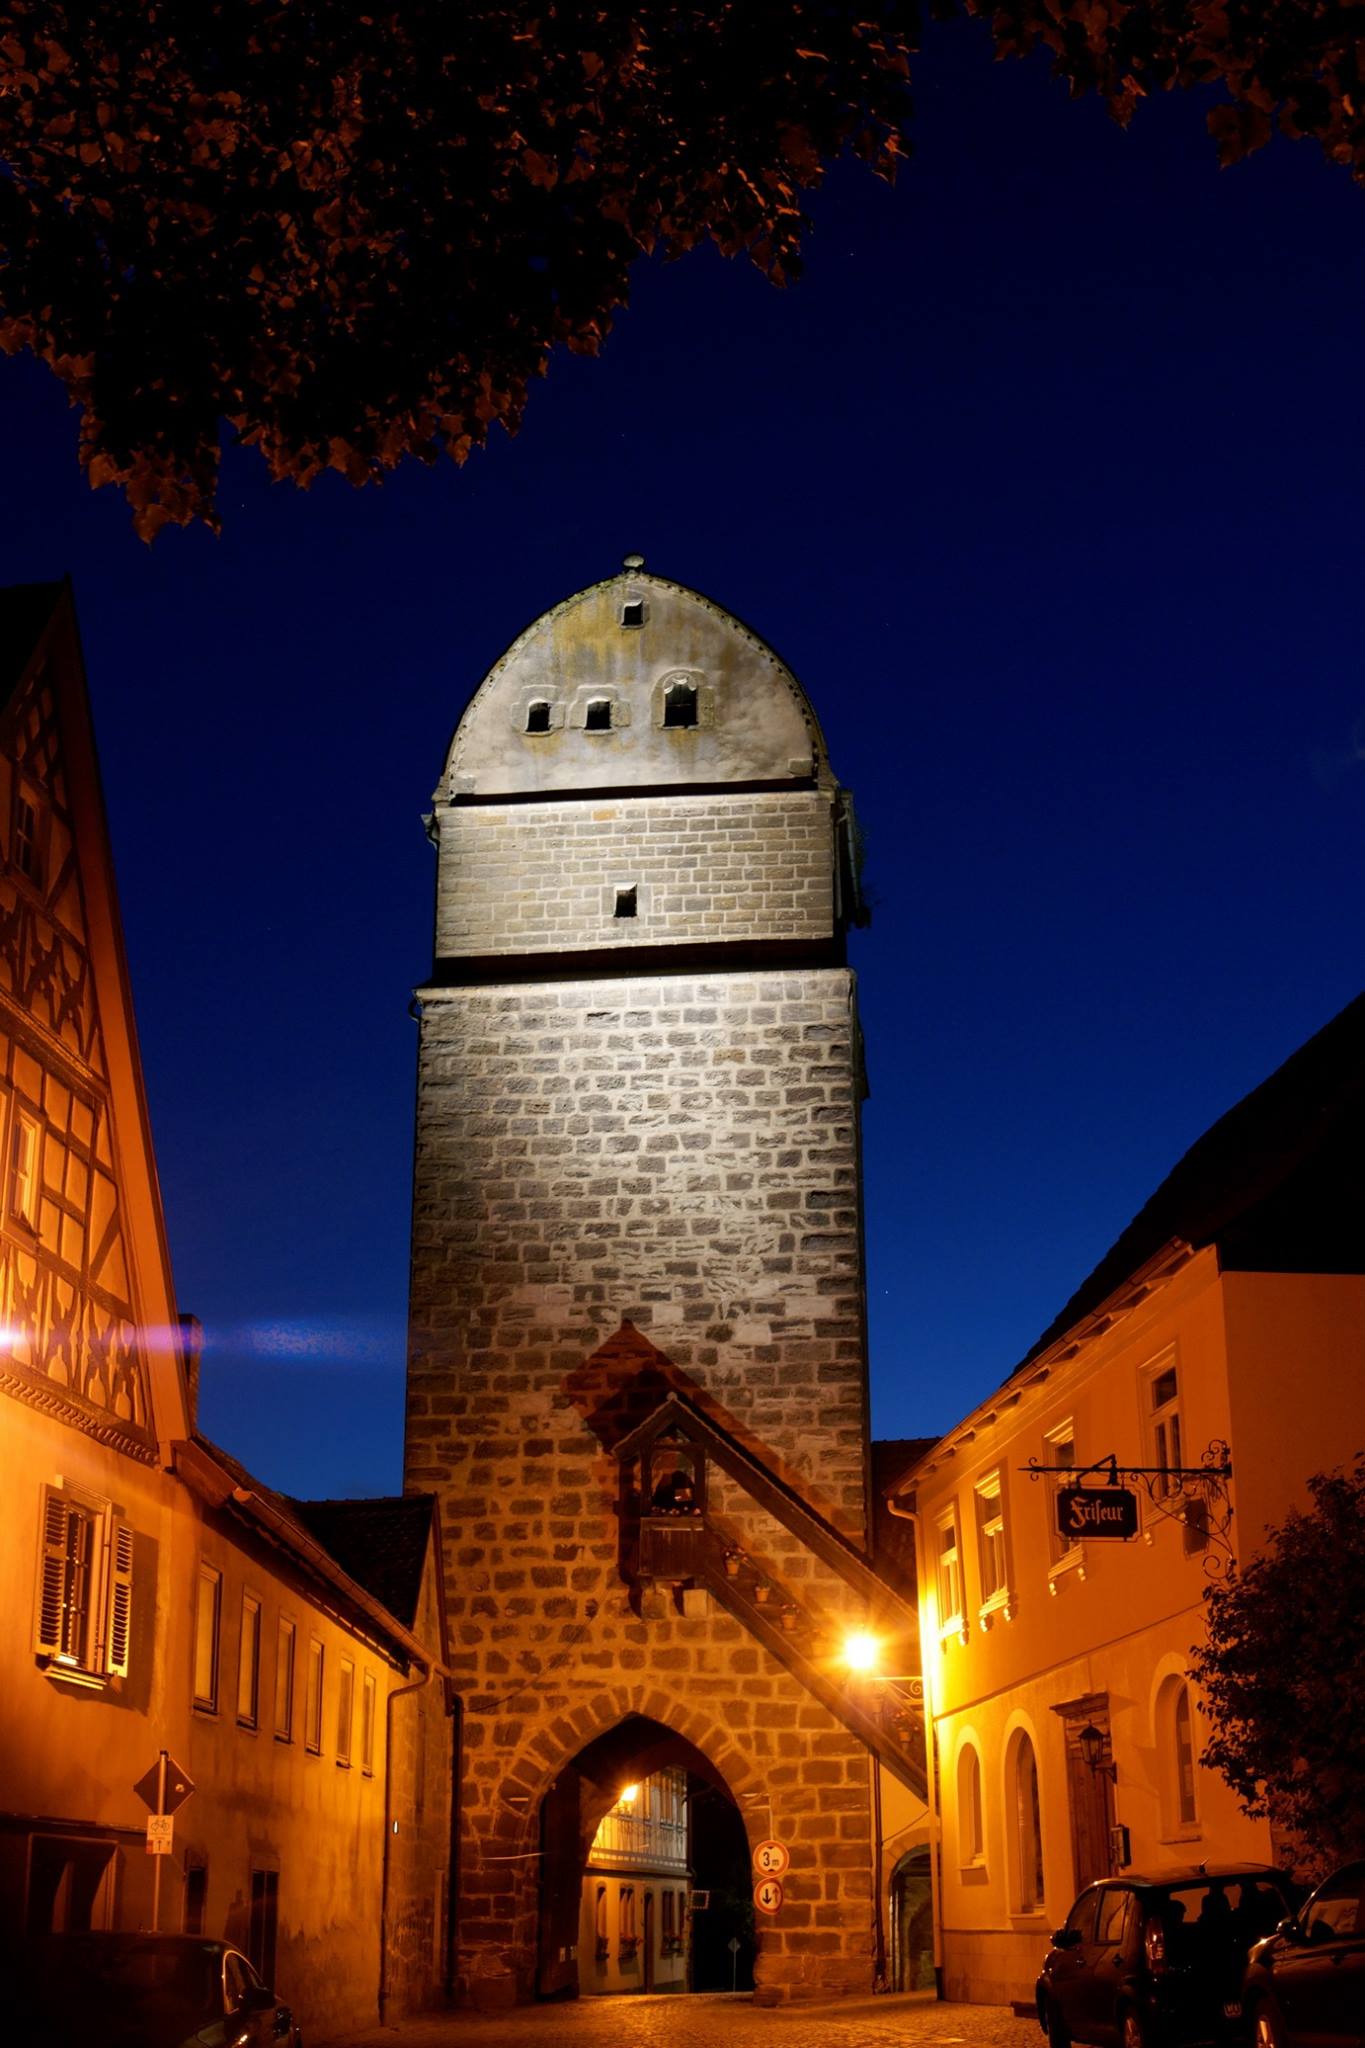  Der Hattersdorfer Torturm der mittelalterlichen Stadt Seßlach